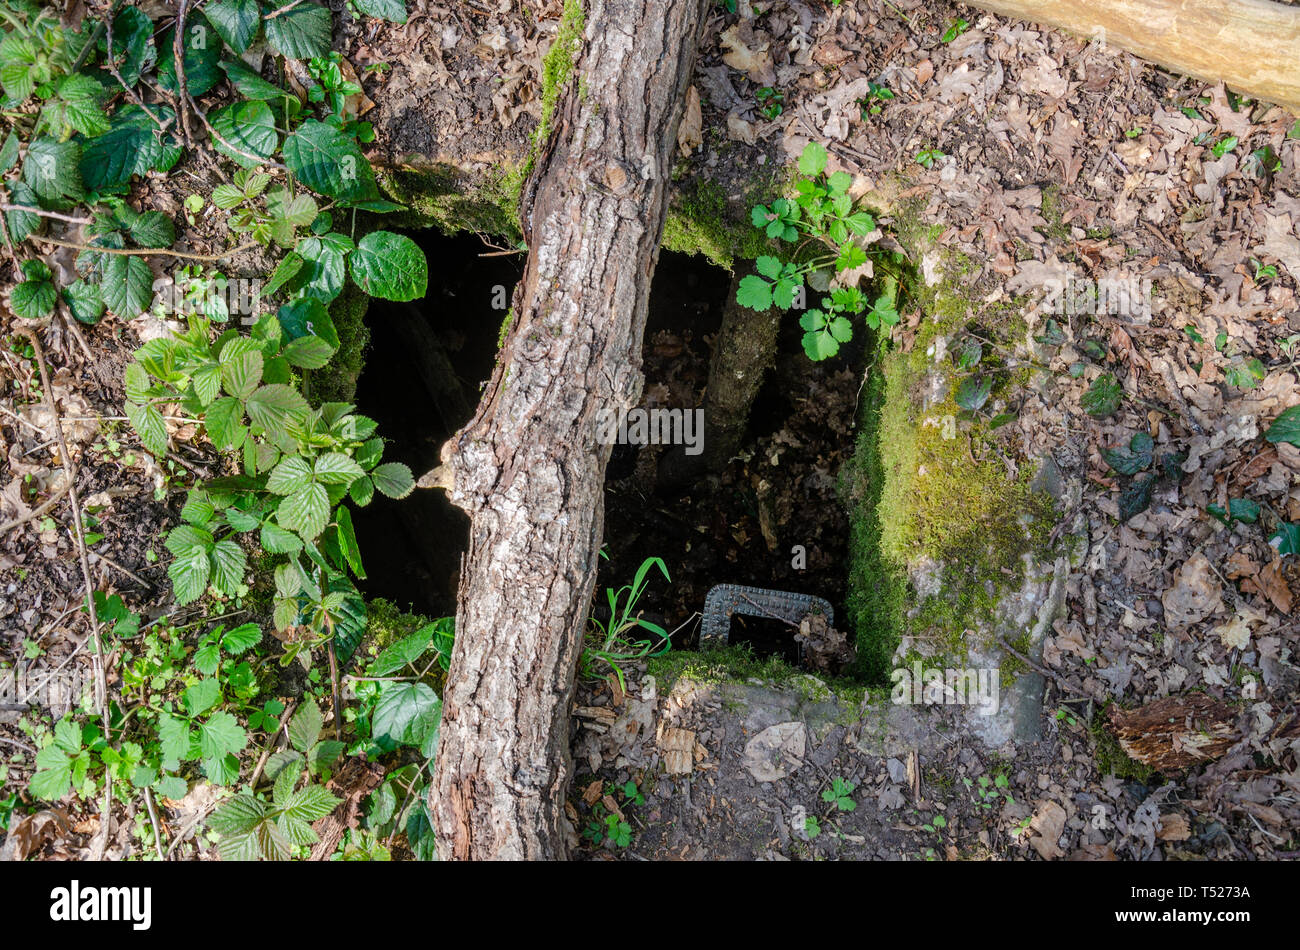 Un arbre menant à un bunker souterrain, vestige de la Seconde Guerre 2 dans ce qui est aujourd'hui total. Banque D'Images